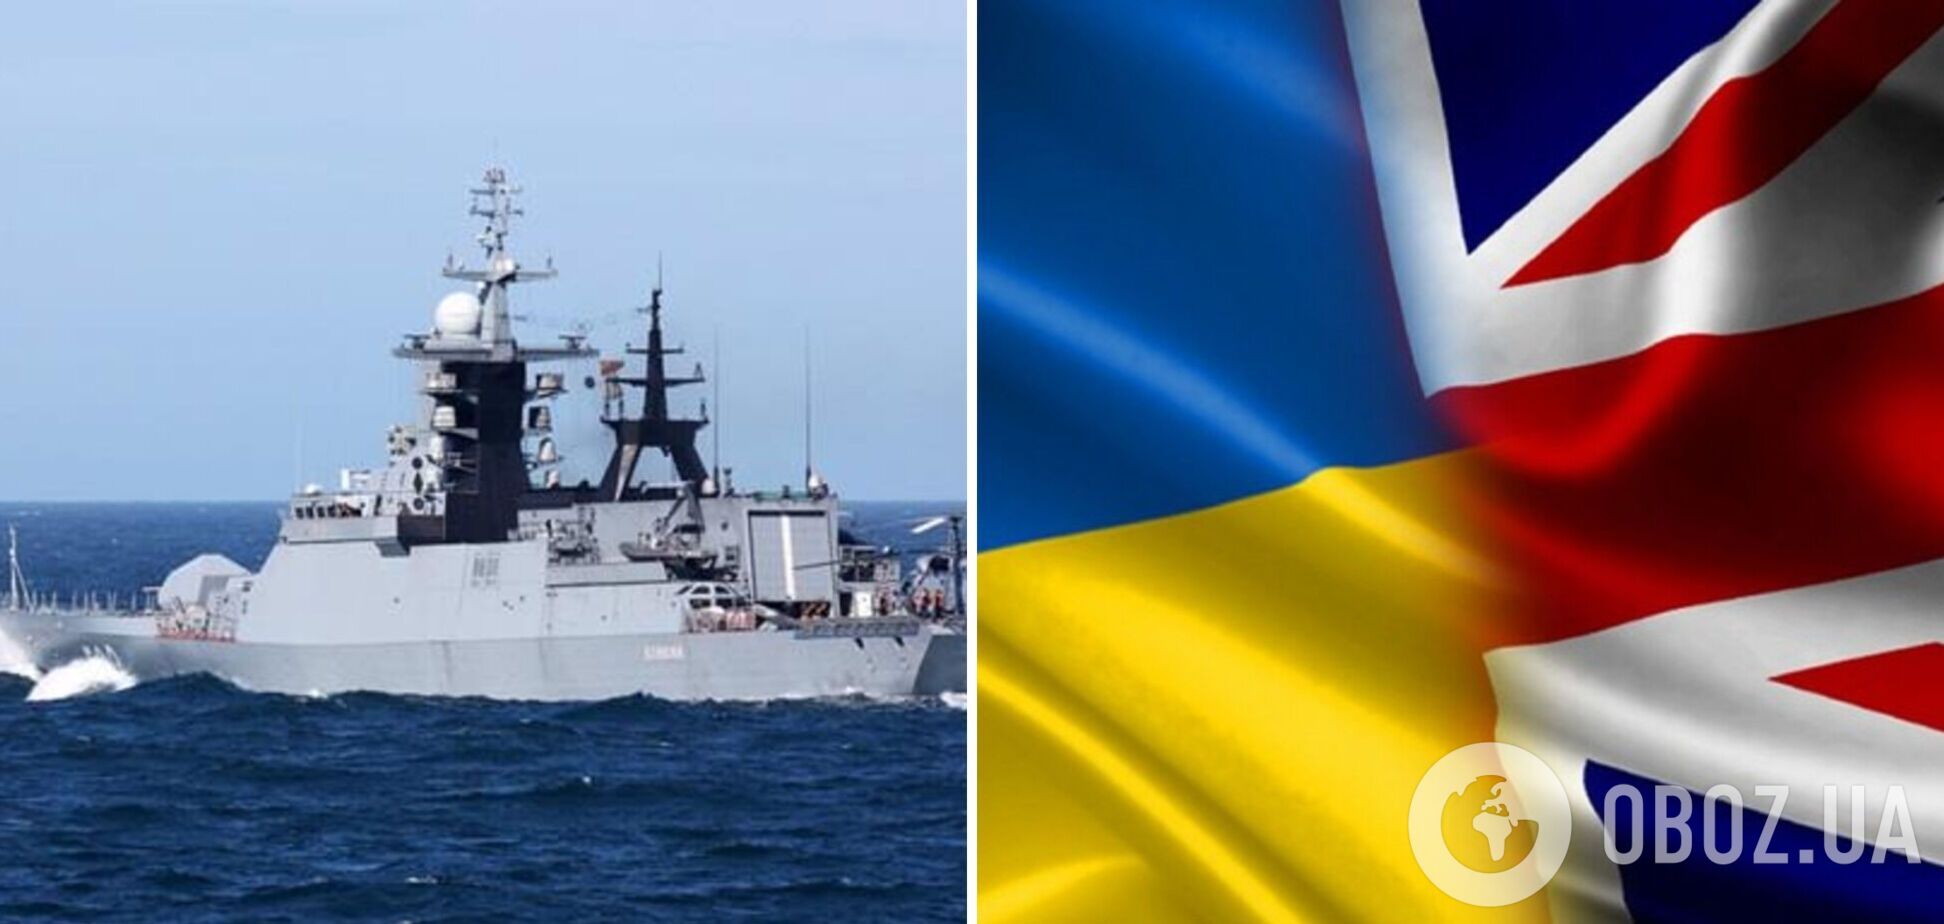 Переданные Британией корабли впервые вышли в море под флагом Украины: они названы в честь Черкасс и Чернигова. Фото